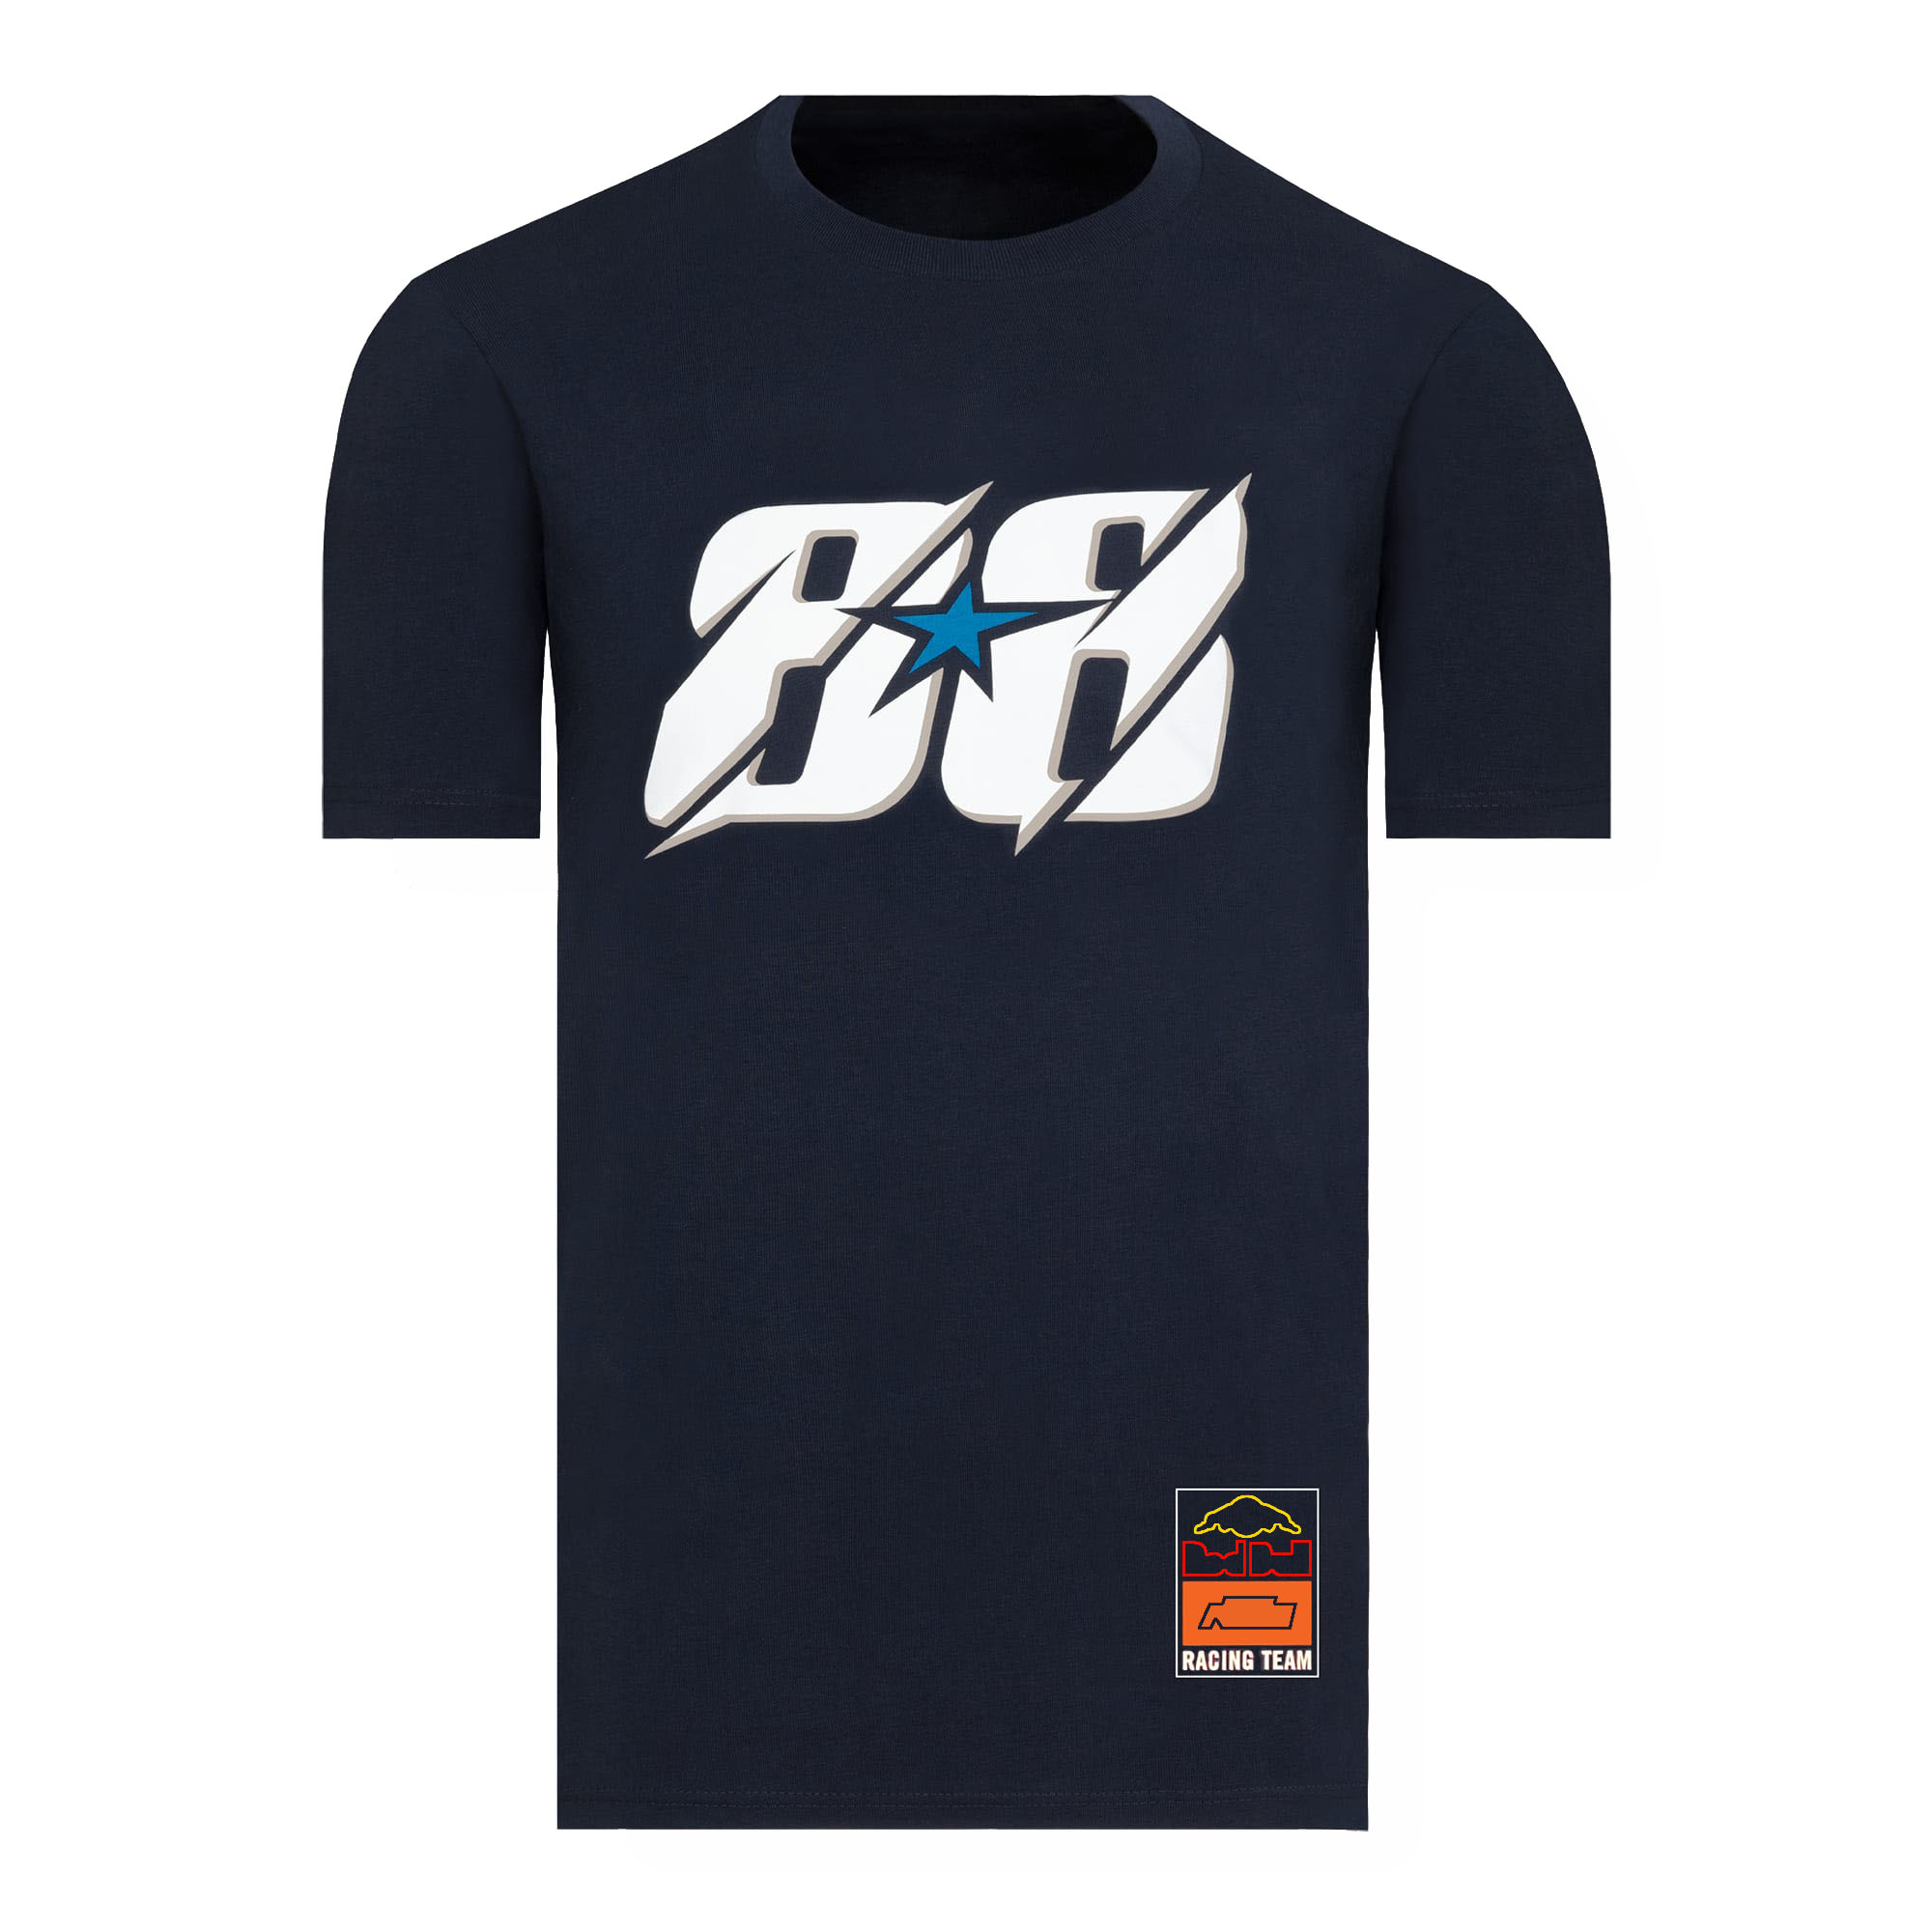 2023 뉴 모토 크로스 저지 티셔츠 티셔츠 모토 레이싱 팀 남자 티셔츠 여름 오토바이 타기 빠른 마른 티셔츠 통기성 탑